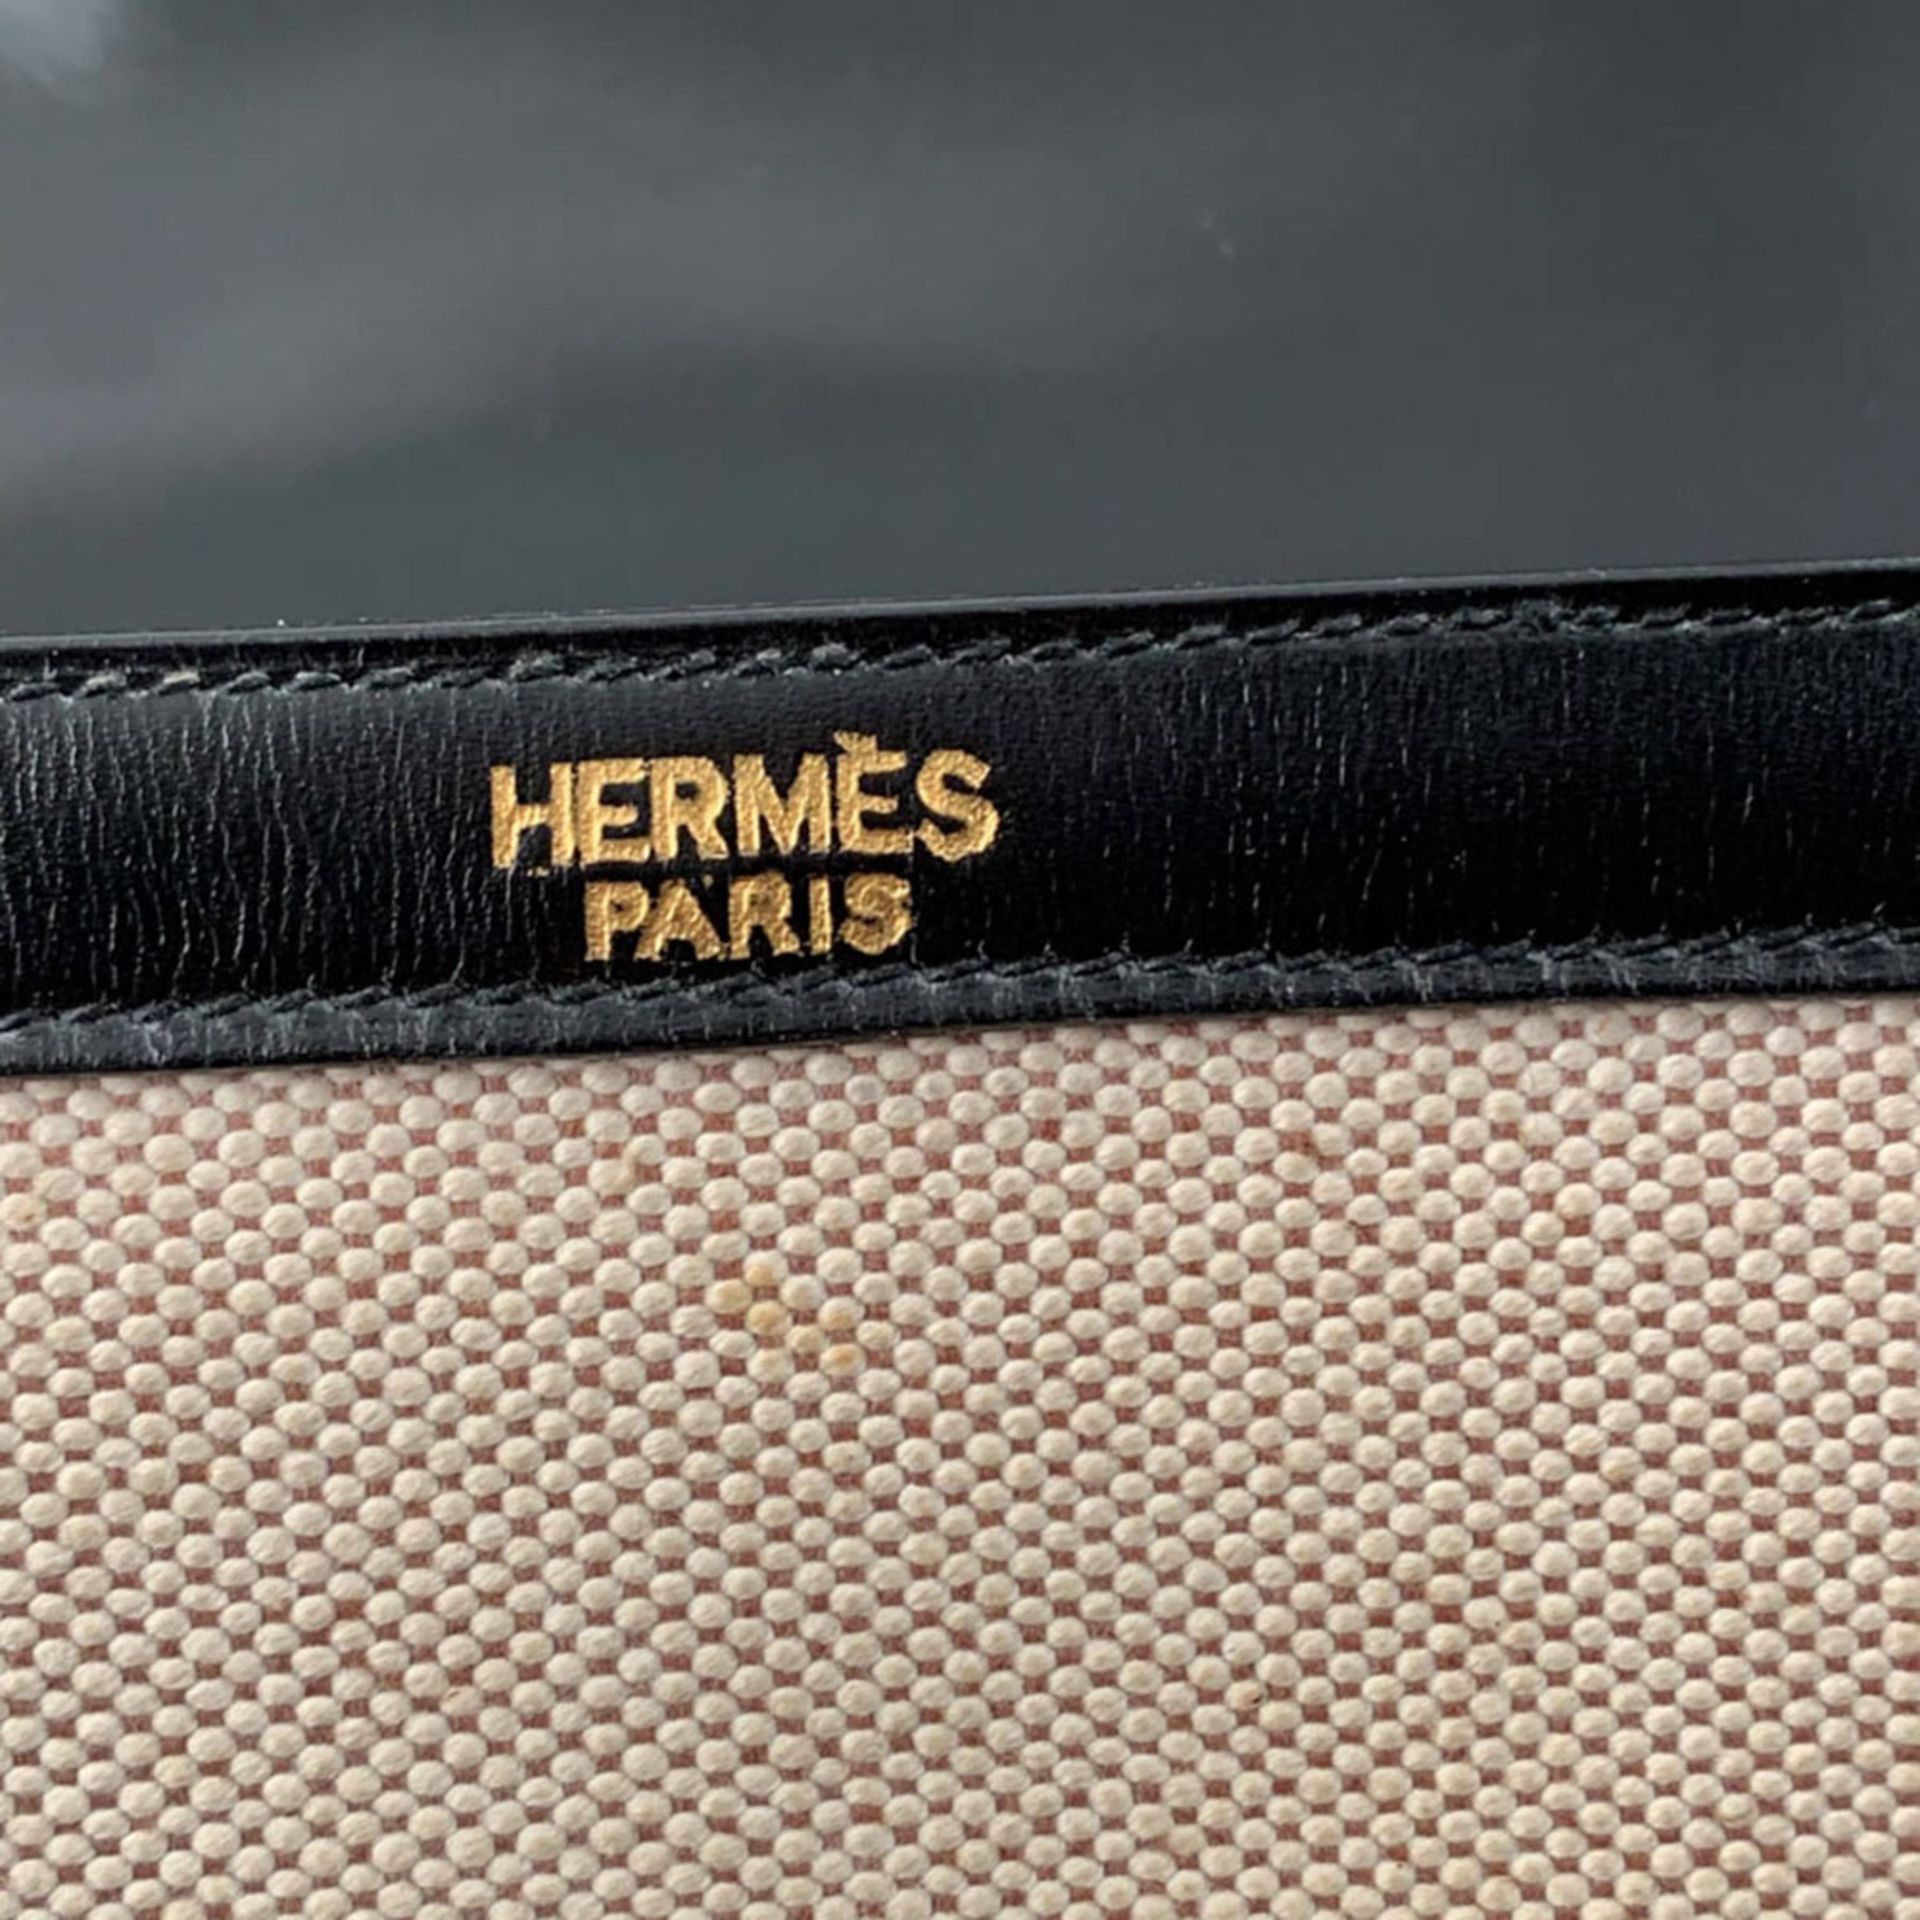 Hermes Dolly collection, vintage shoulder bag 1980/90s 18x23x7 cm. - Image 3 of 4